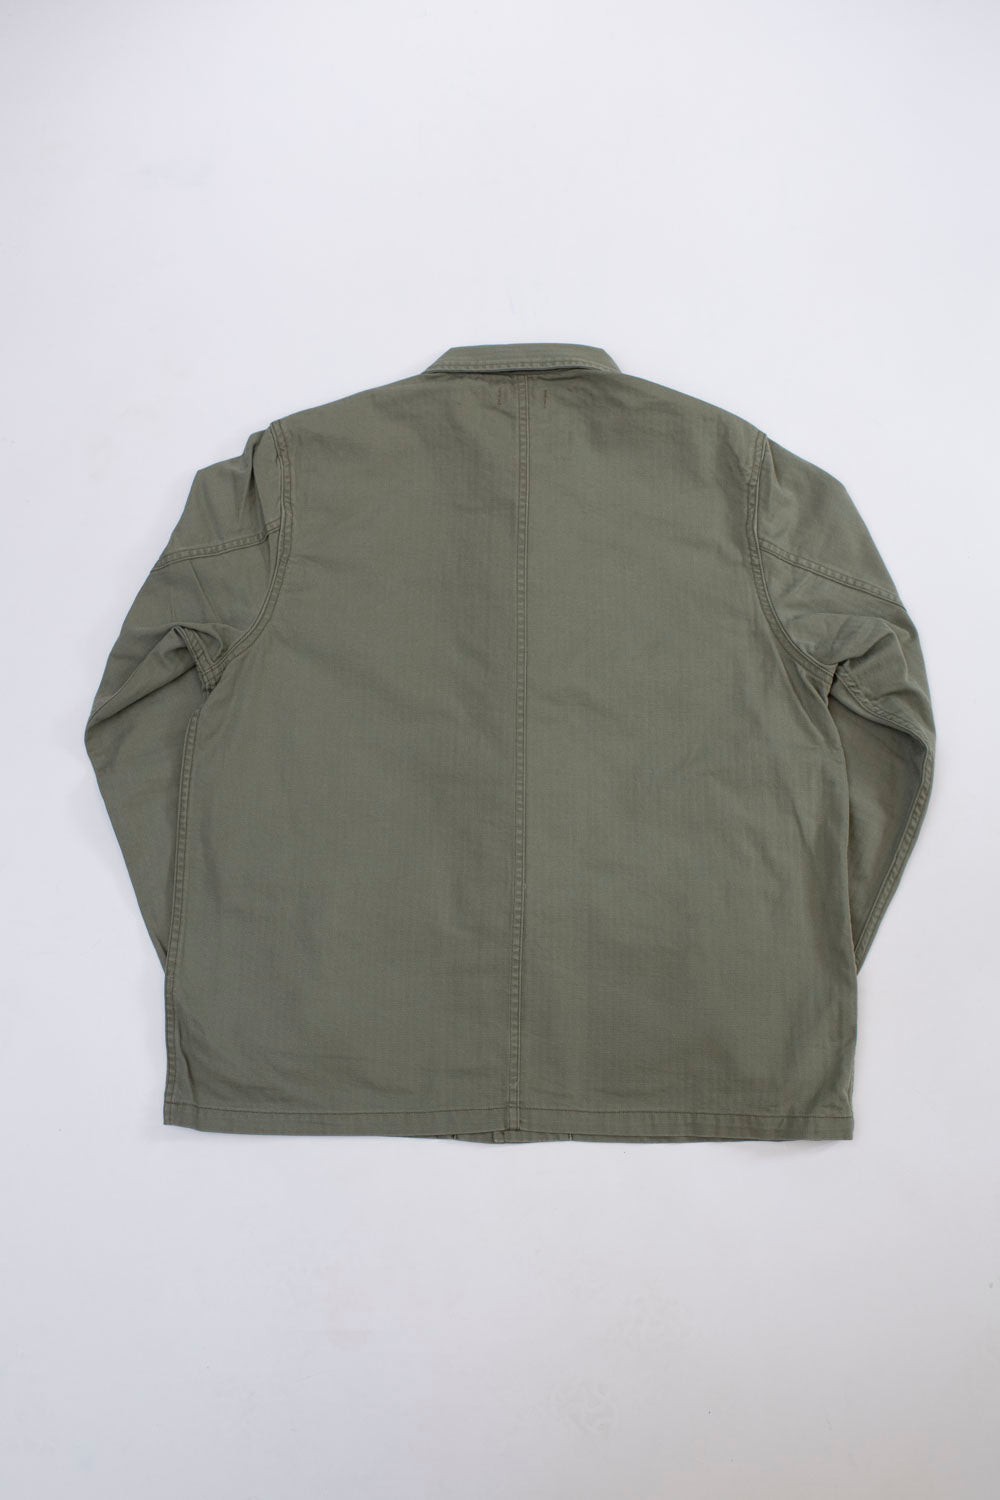 MSP-4019 - Chambray Kung Fu Jacket - Army Green